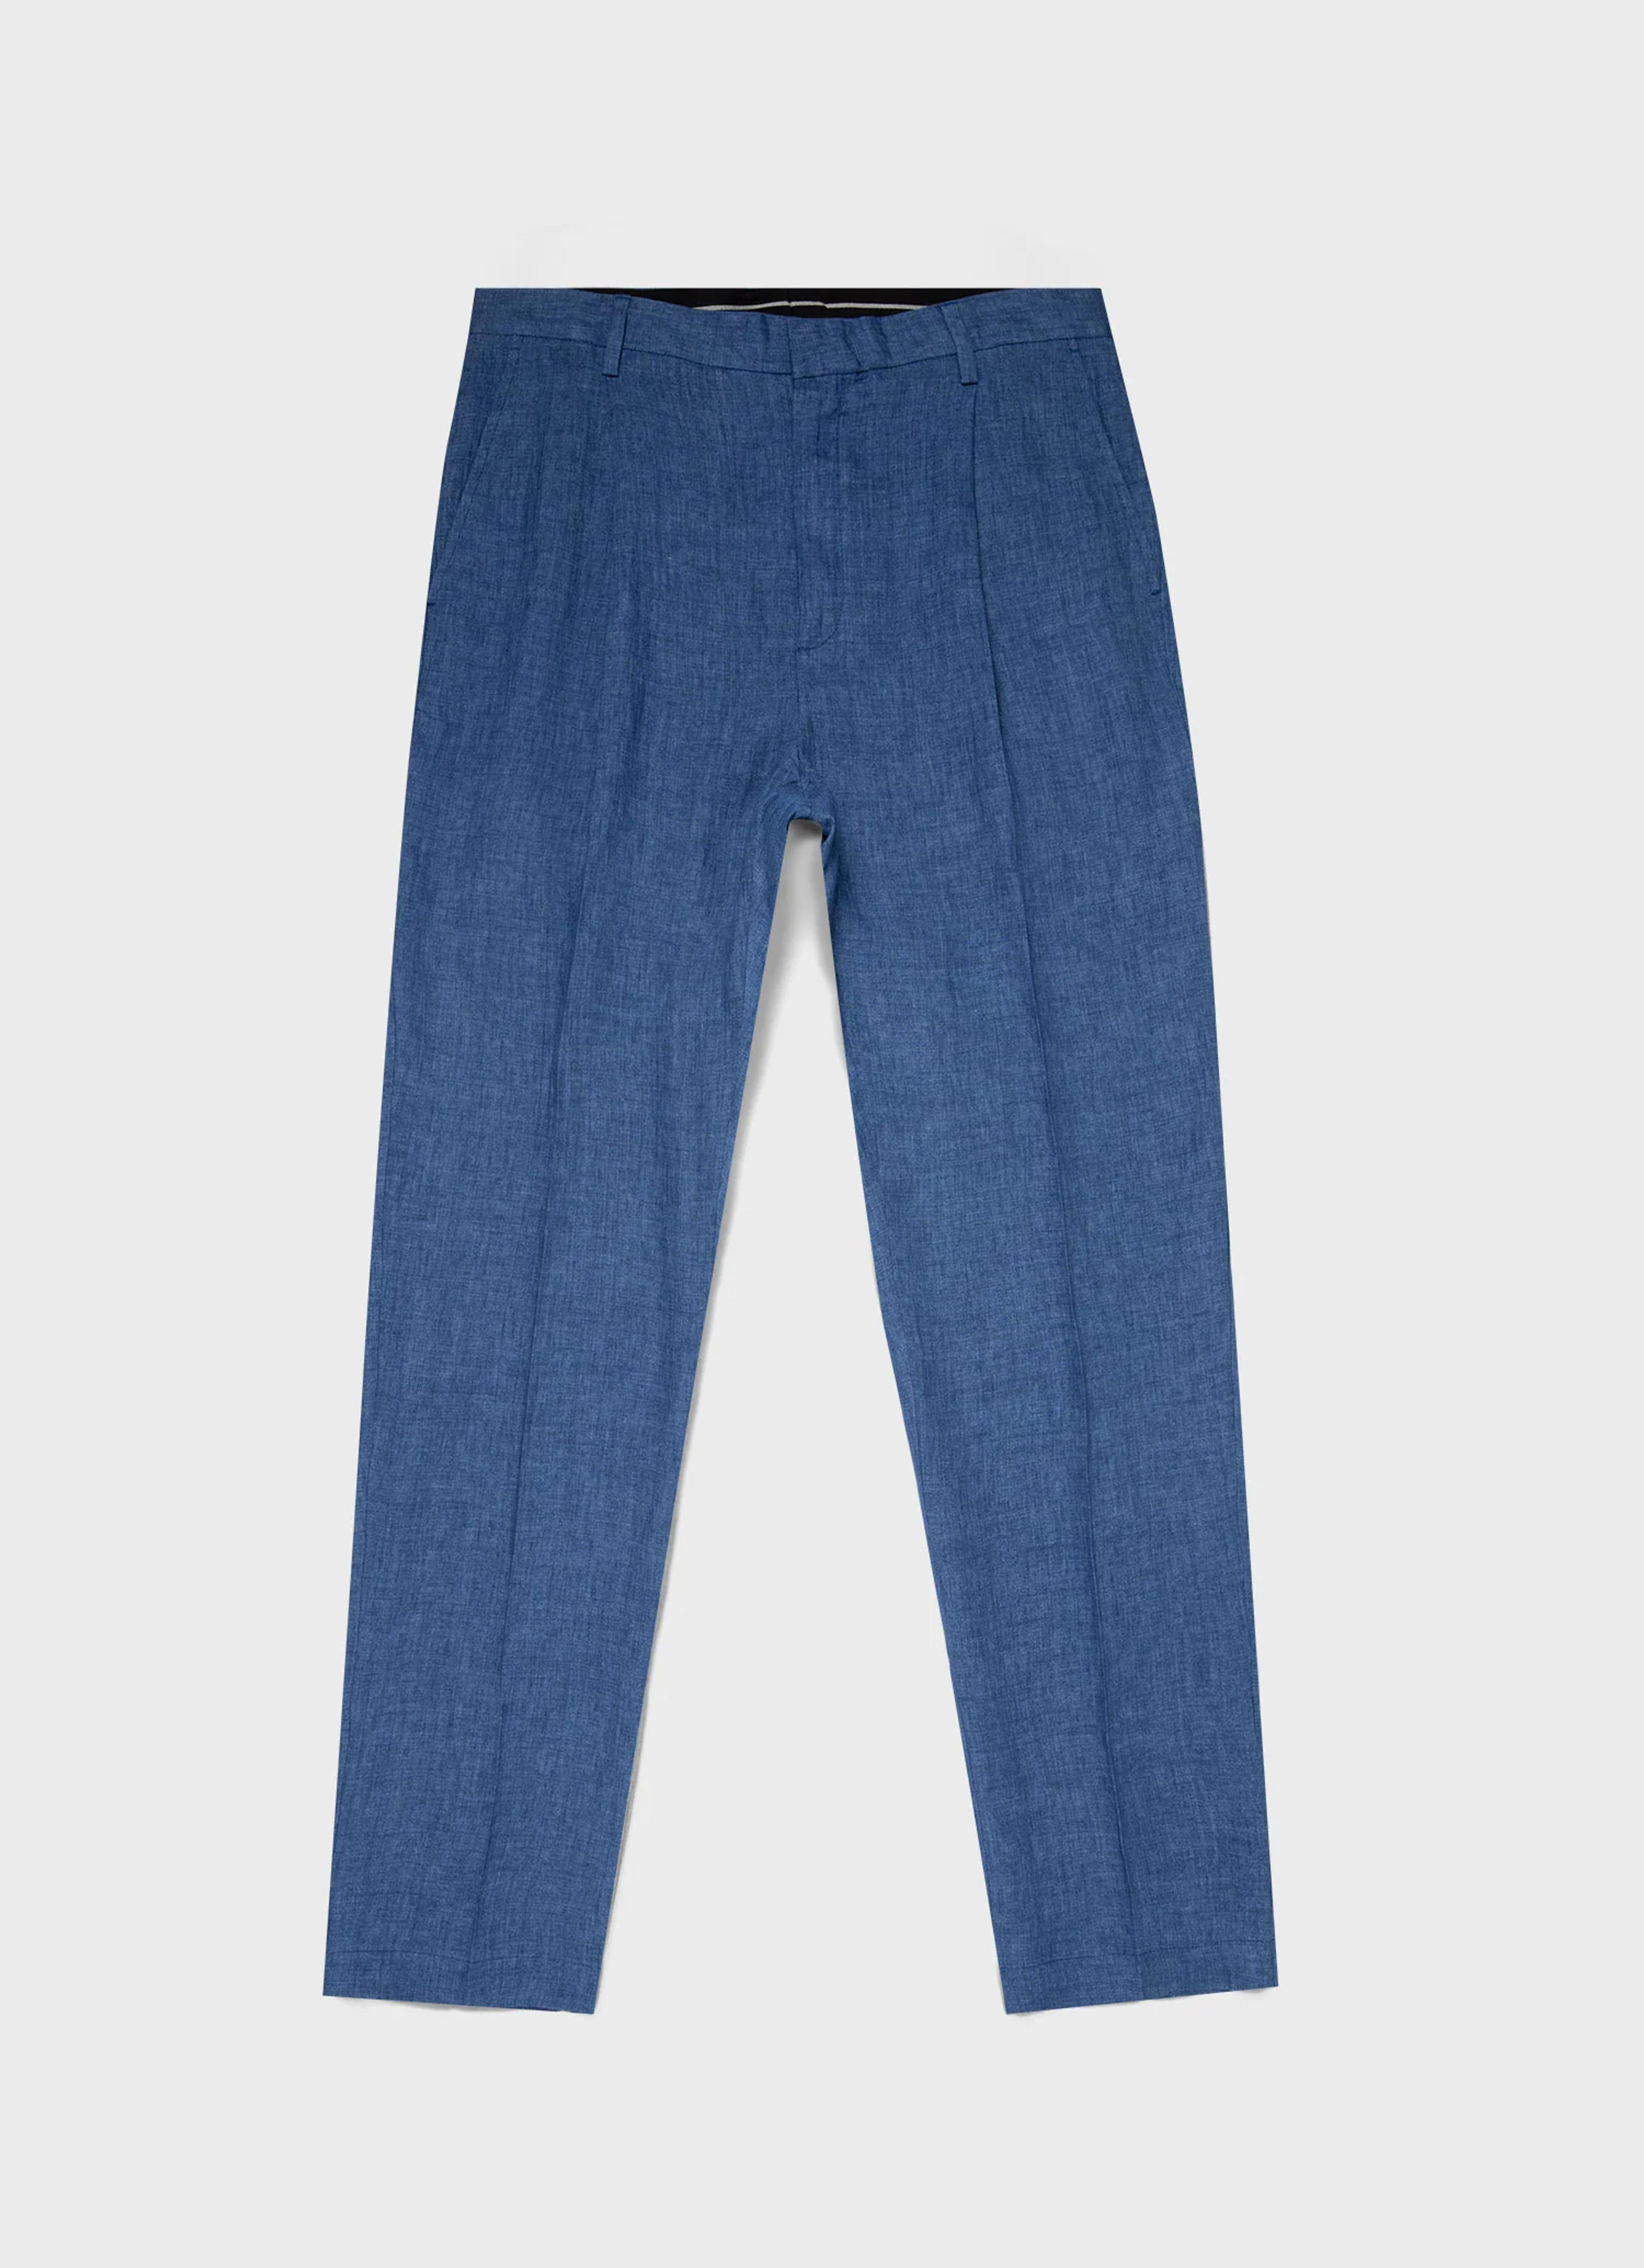 Men's Pleated Linen Trouser in Blue Melange | Sunspel